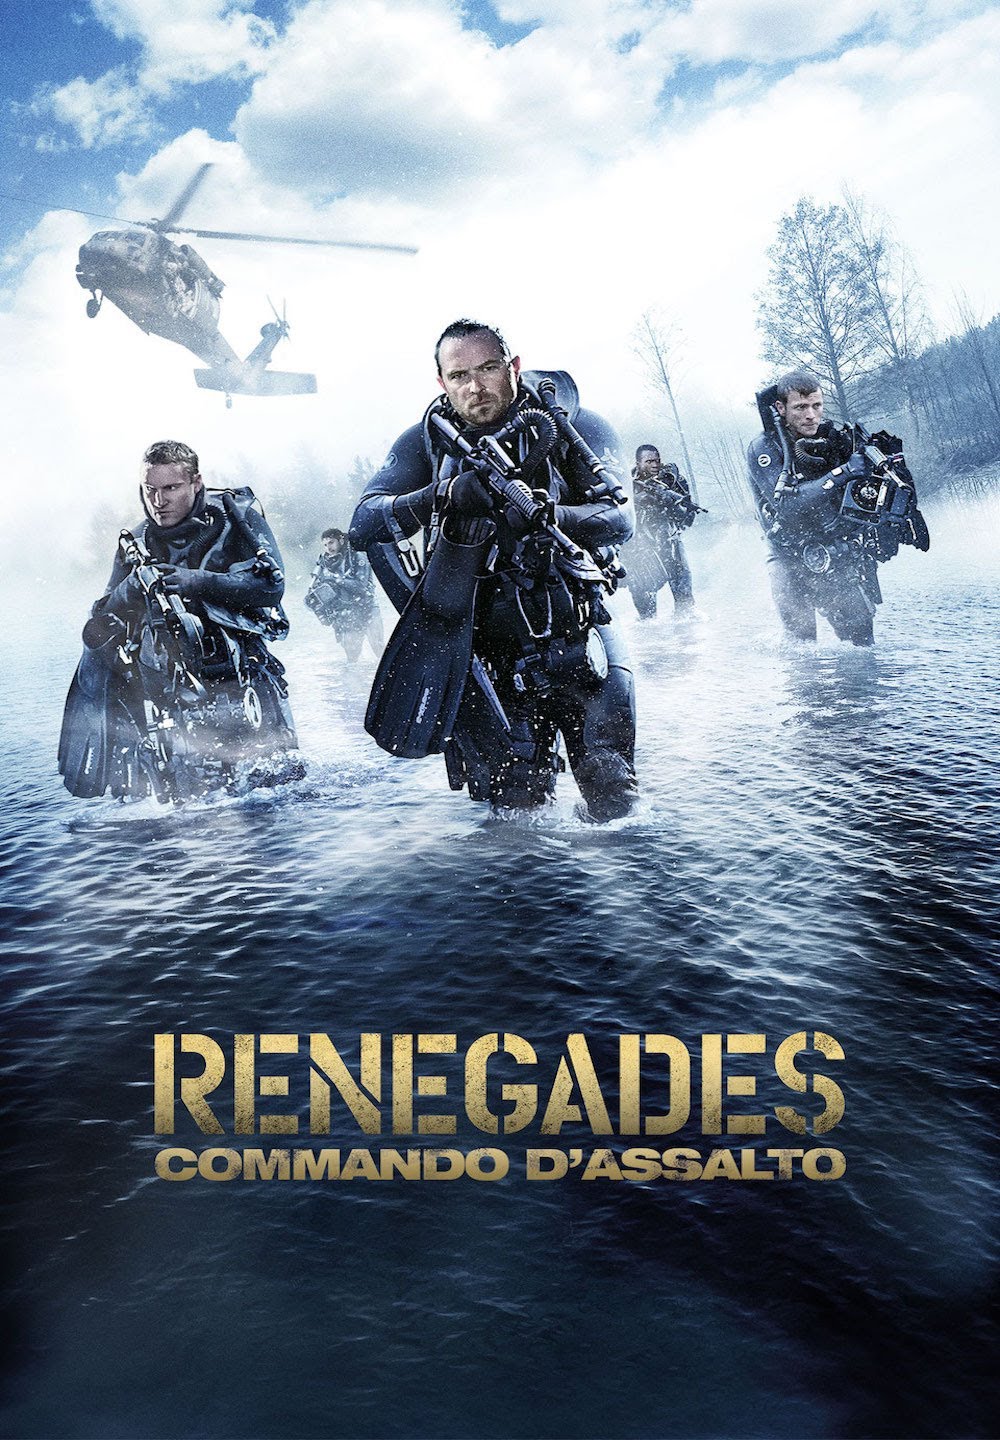 Renegades – Commando d’assalto [HD] (2017)